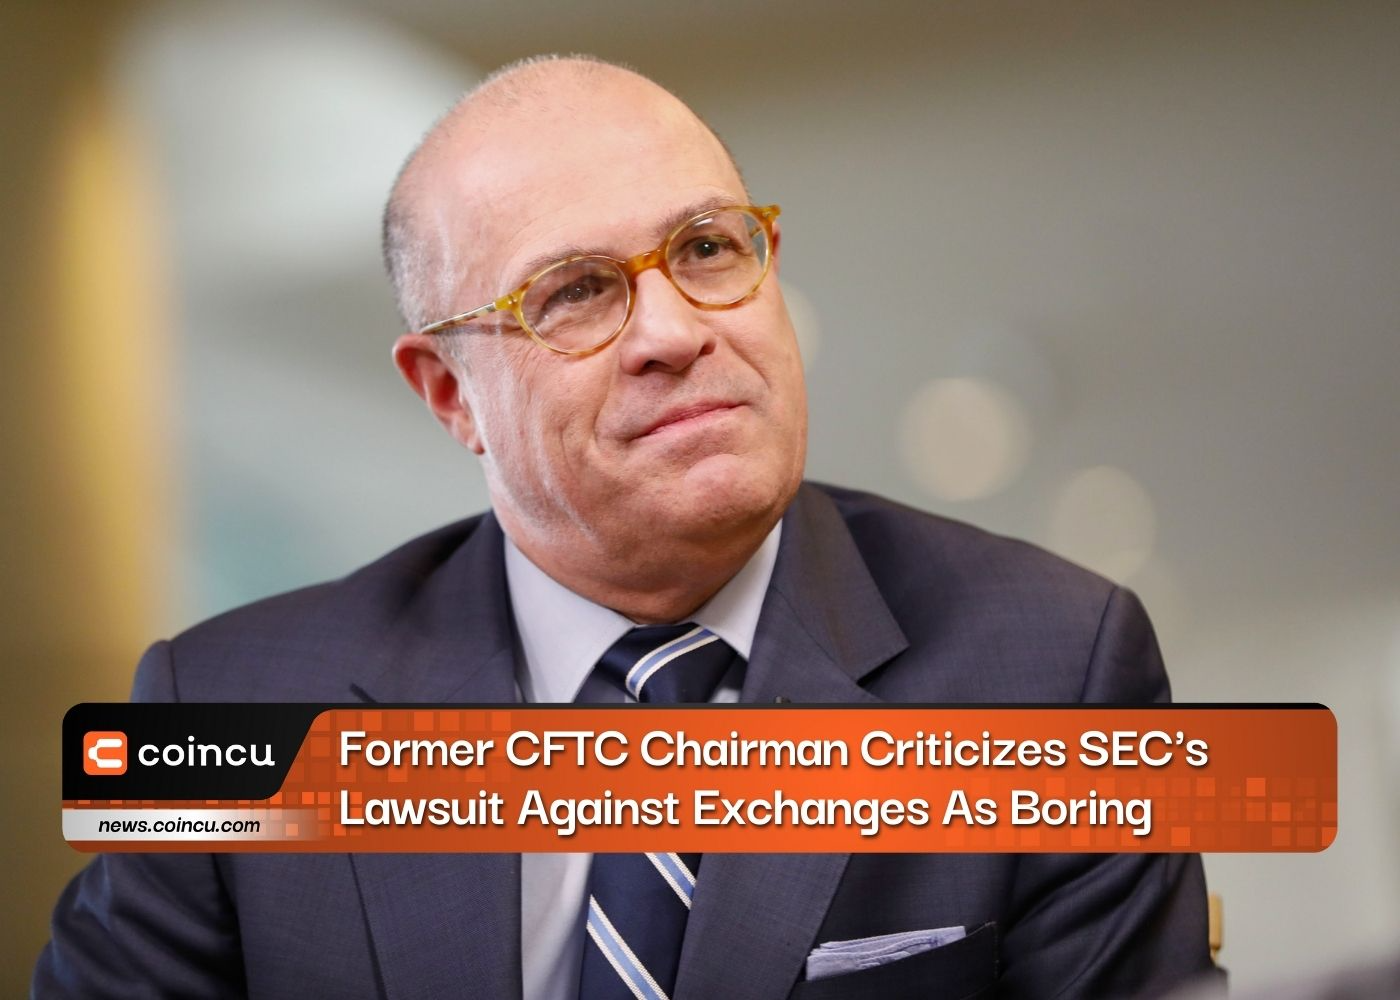 Former CFTC Chairman Criticizes SEC's Lawsuit Against Exchanges As Boring